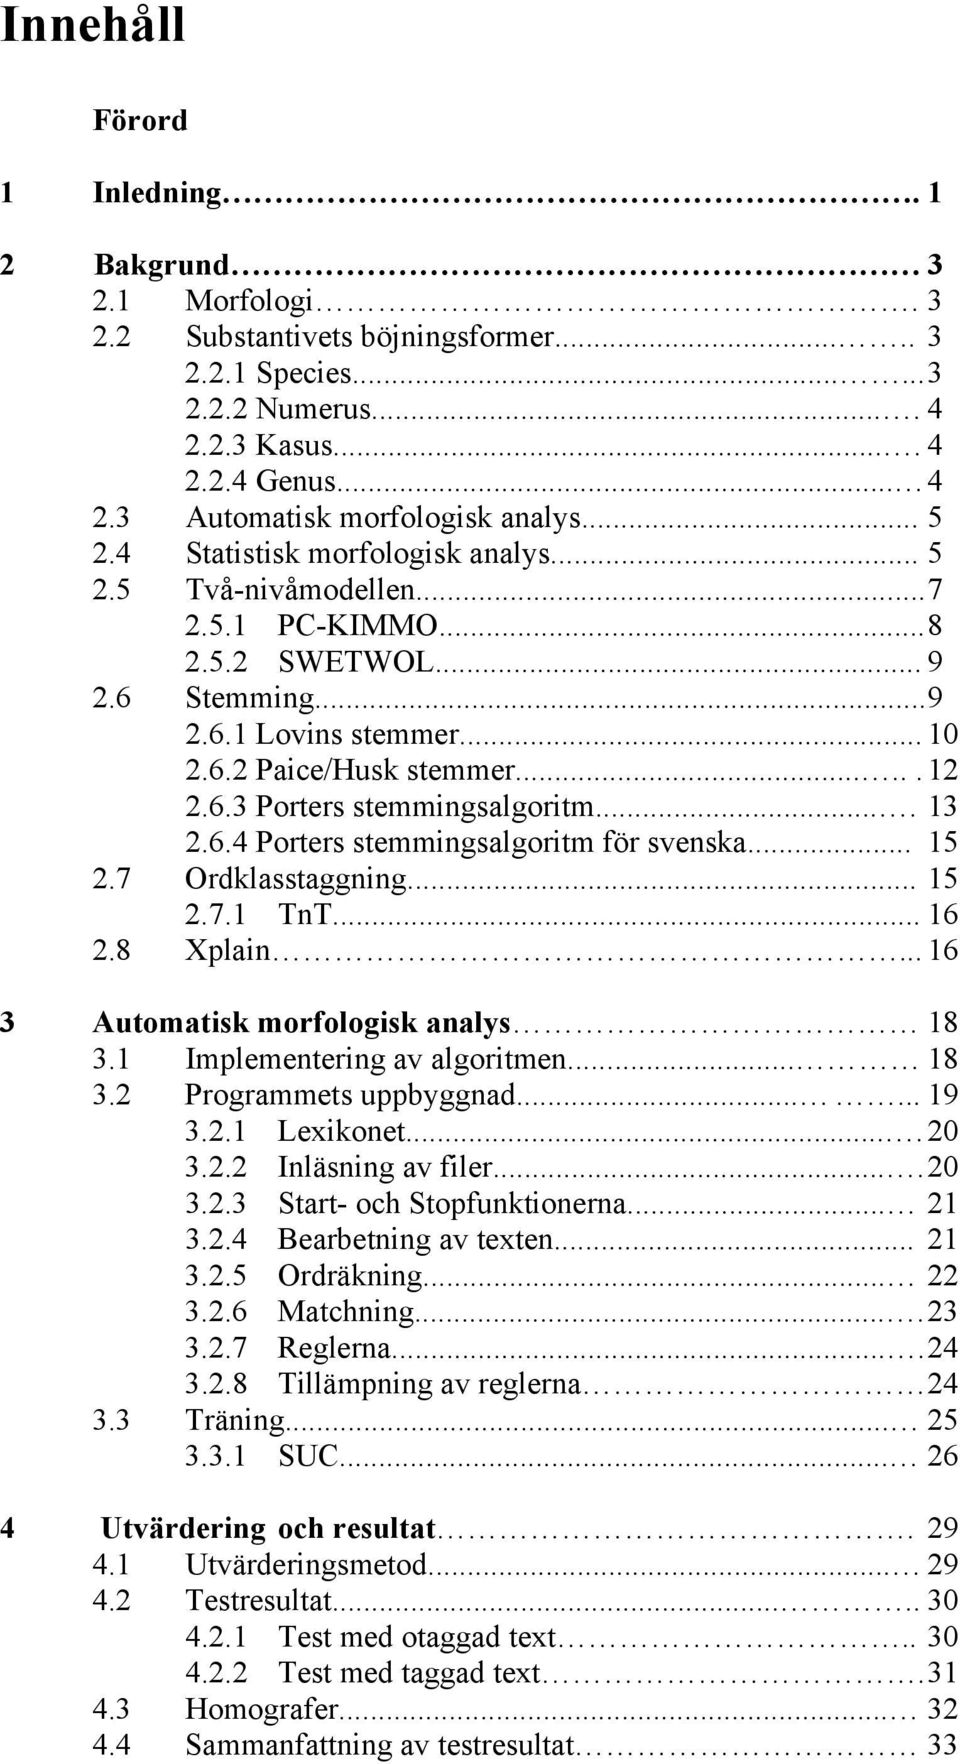 ... 13 2.6.4 Porters stemmingsalgoritm för svenska... 15 2.7 Ordklasstaggning... 15 2.7.1 TnT... 16 2.8 Xplain... 16 3 Automatisk morfologisk analys 18 3.1 Implementering av algoritmen... 18 3.2 Programmets uppbyggnad.